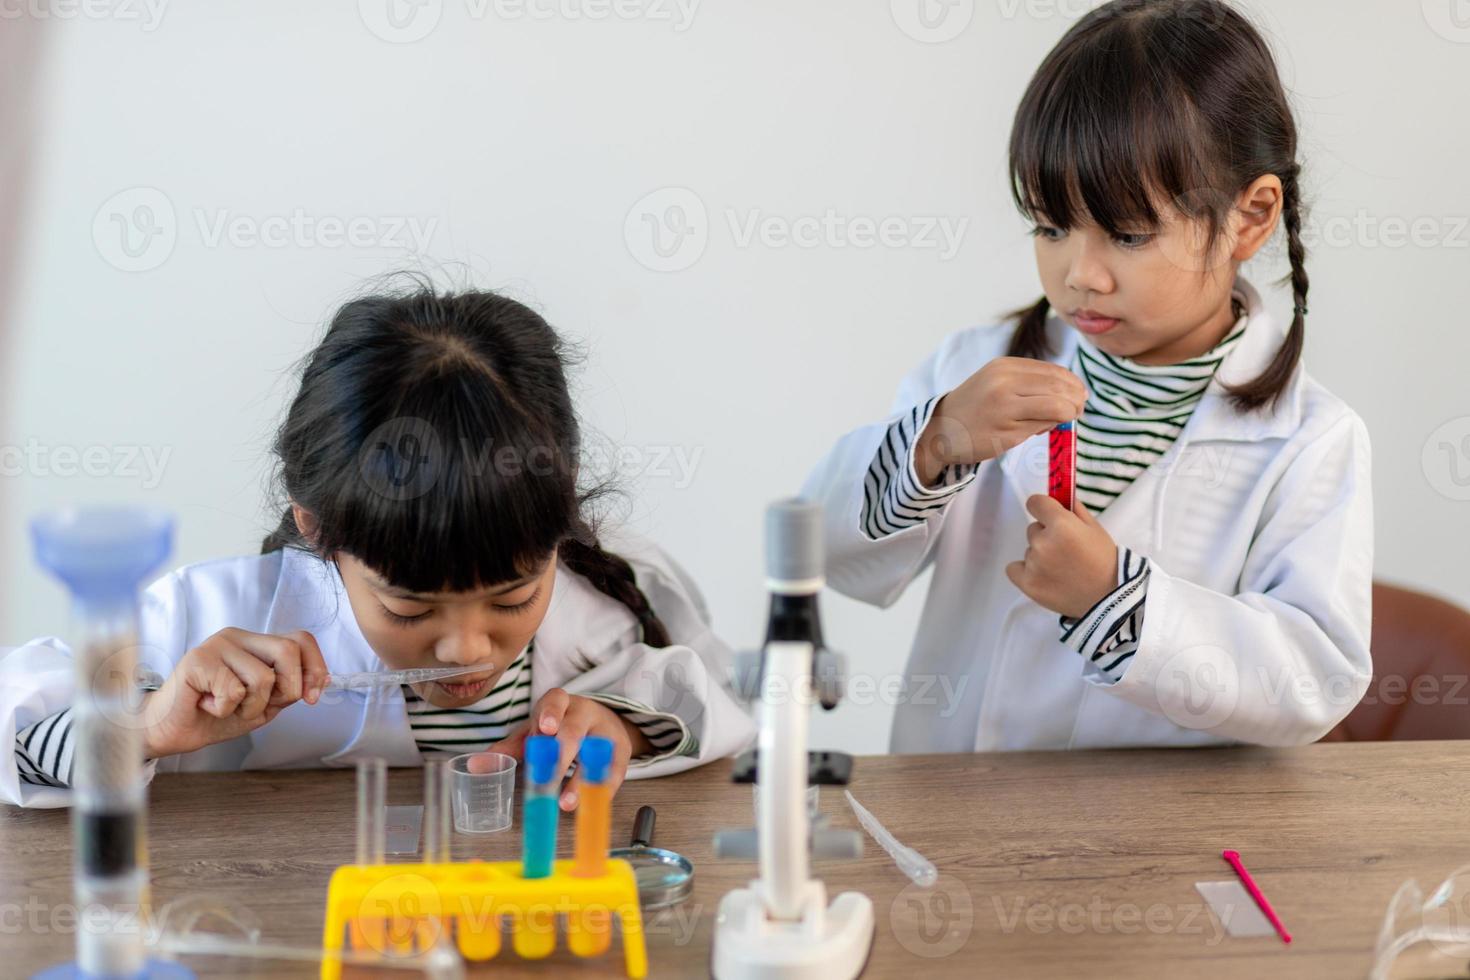 concept d'éducation, de science, de chimie et d'enfants - enfants ou étudiants avec expérience de fabrication de tubes à essai au laboratoire de l'école photo